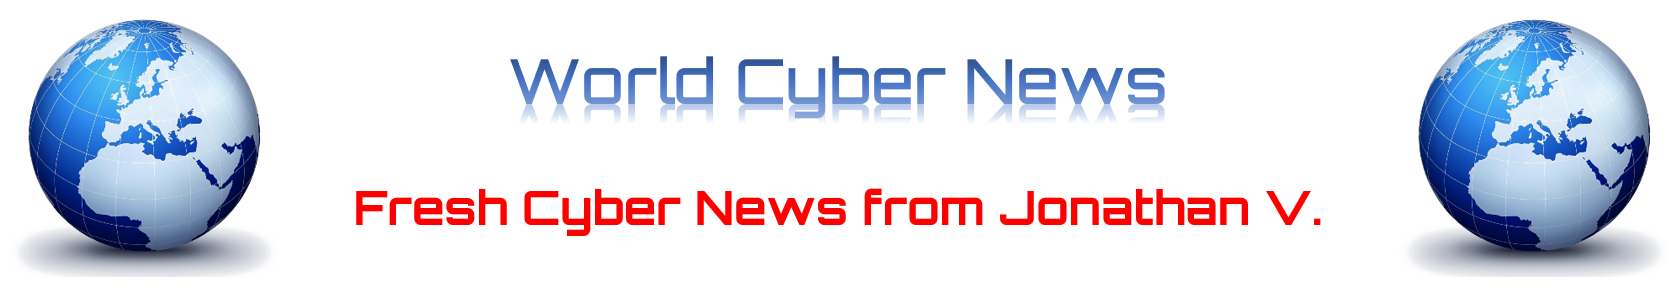 World Cyber News